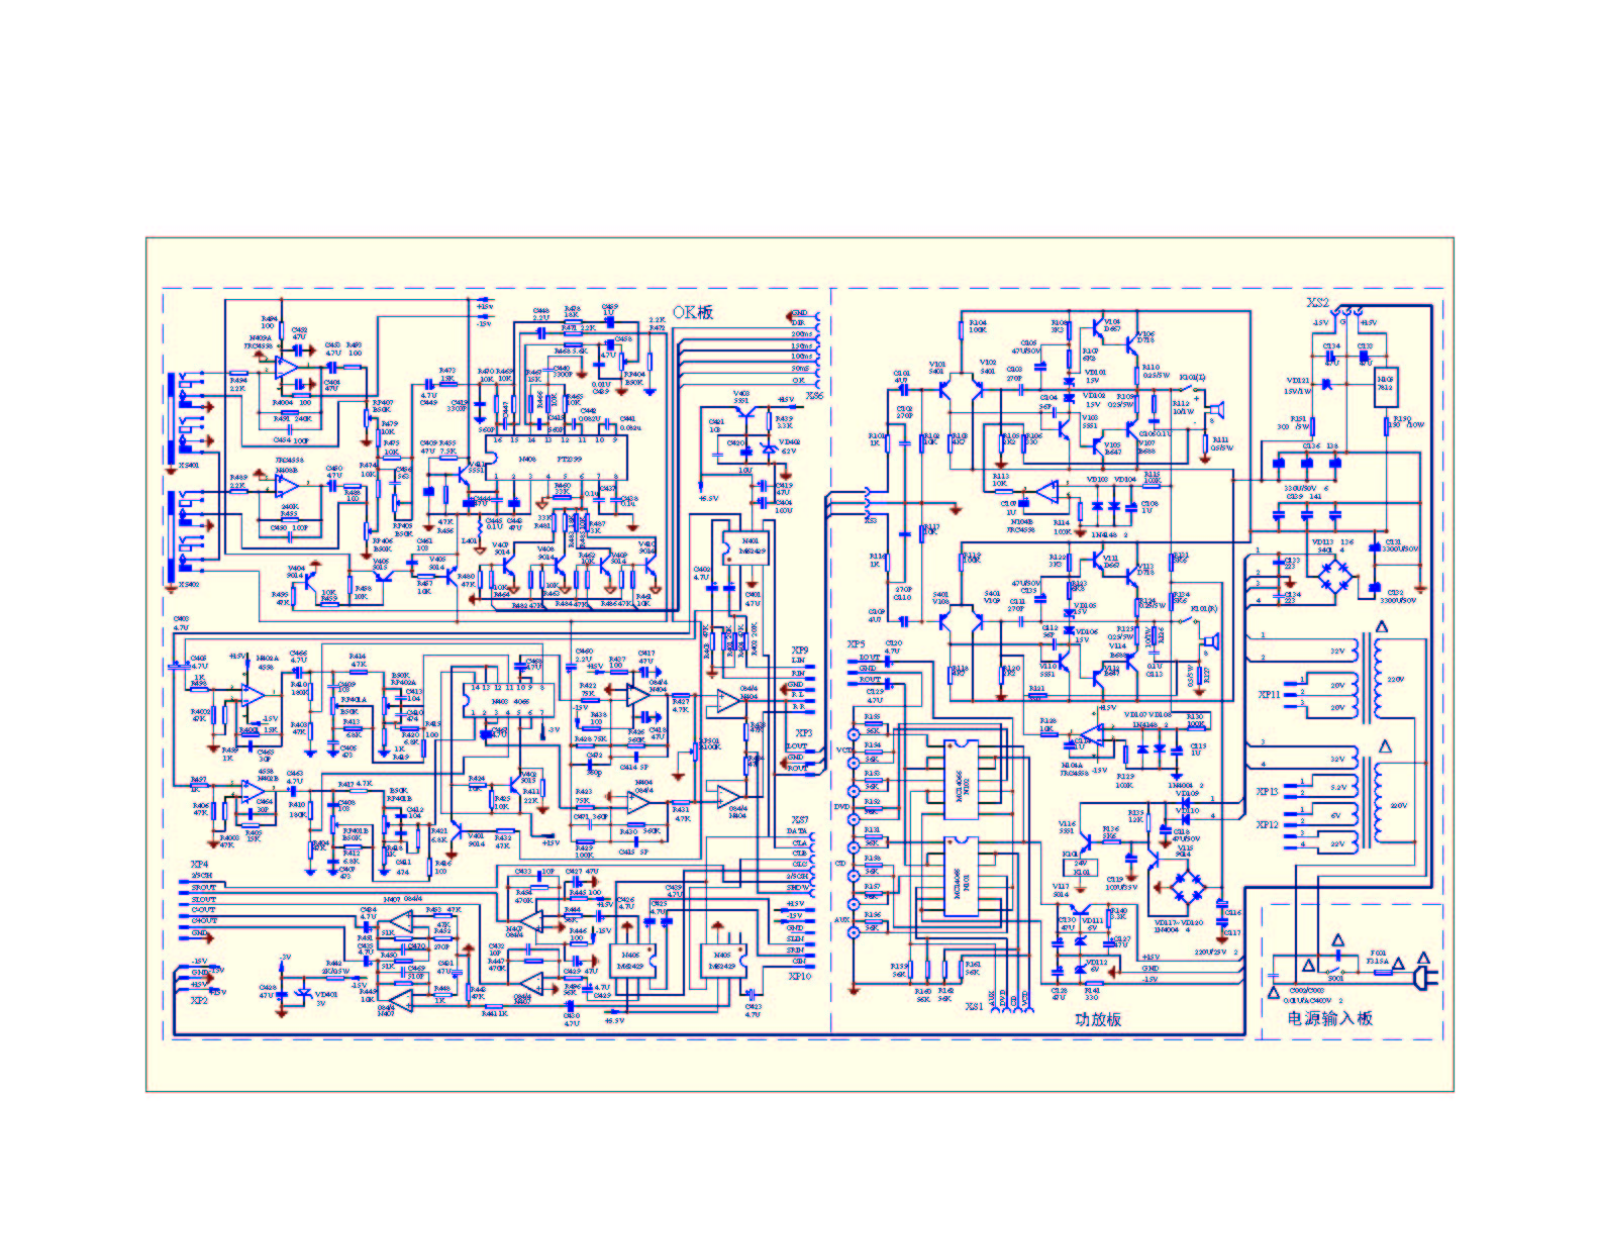 SVEN HR-920 circuit diagram